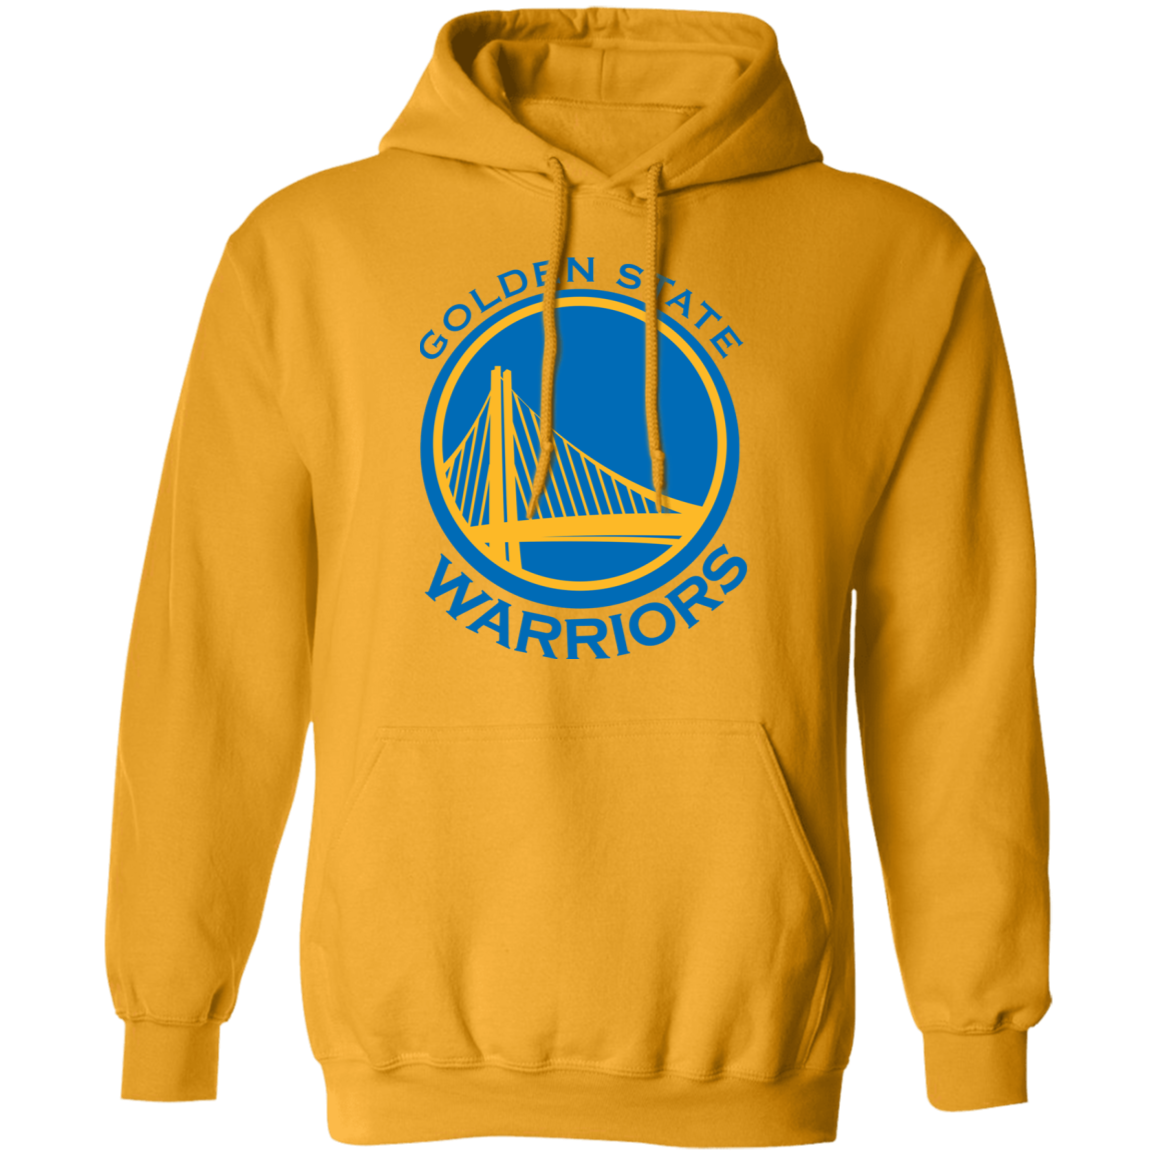 Golden State Warriors Logo Crewneck Sweatshirt - Happy Spring Tee